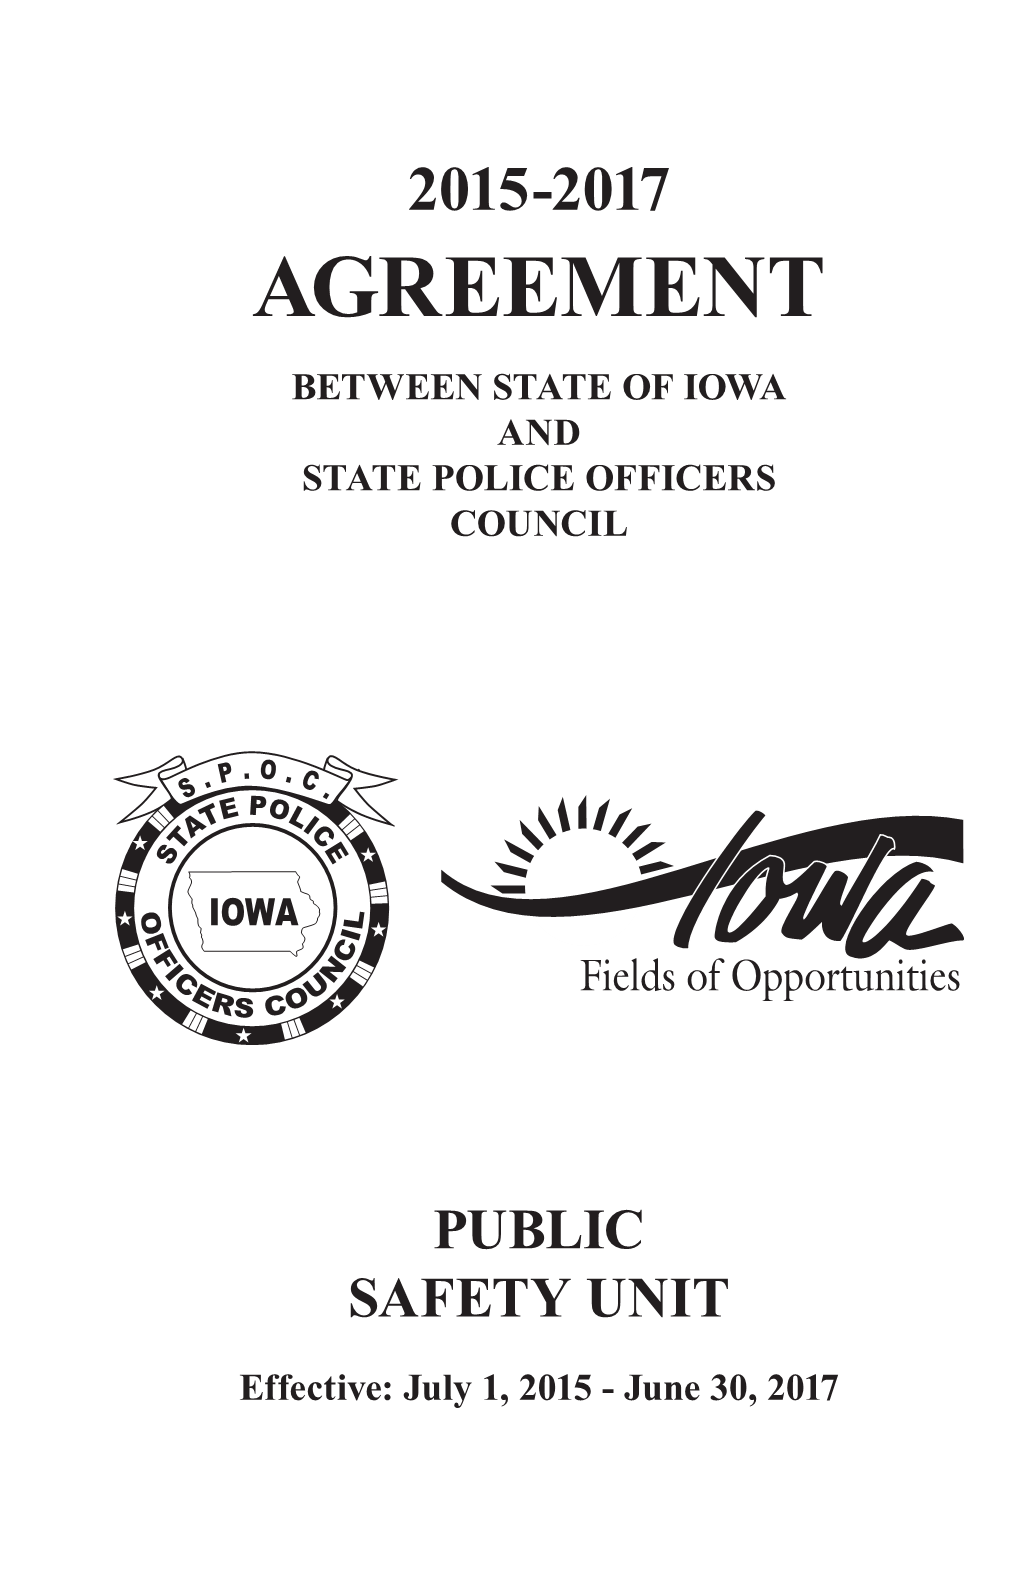 Iowa State Police